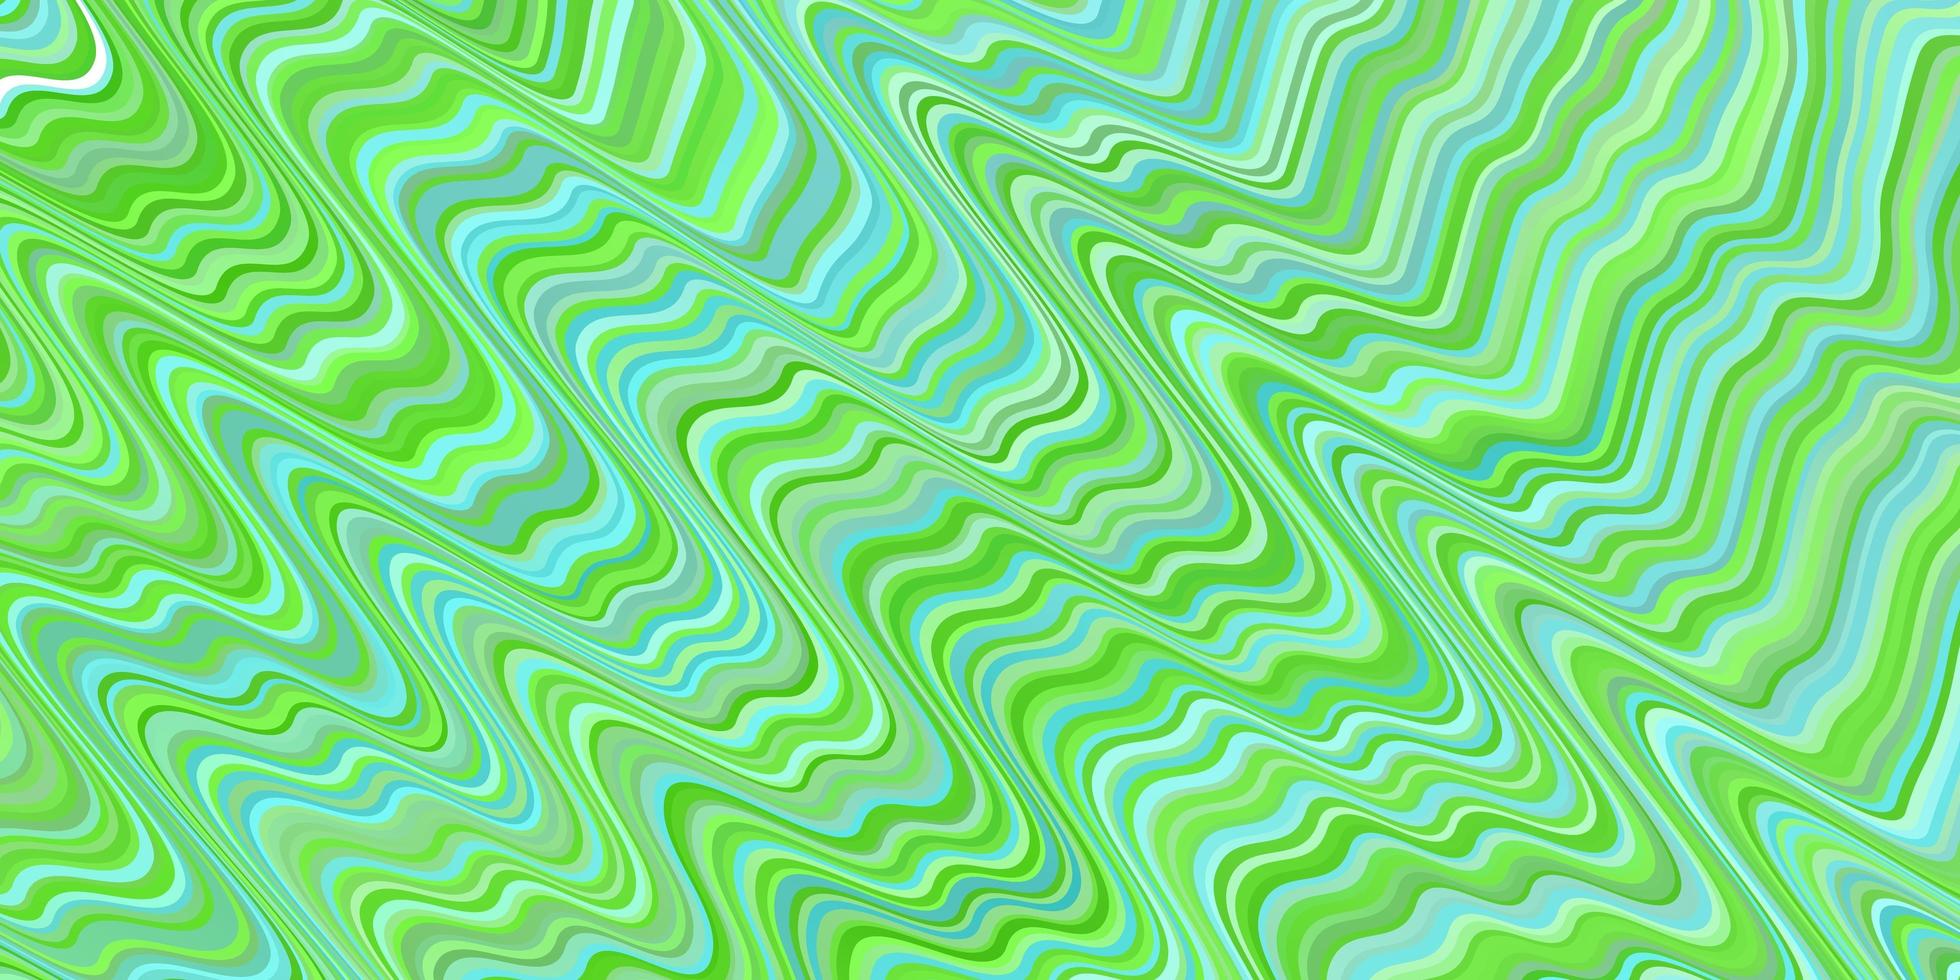 ljusgrön vektormall med böjda linjer. vektor